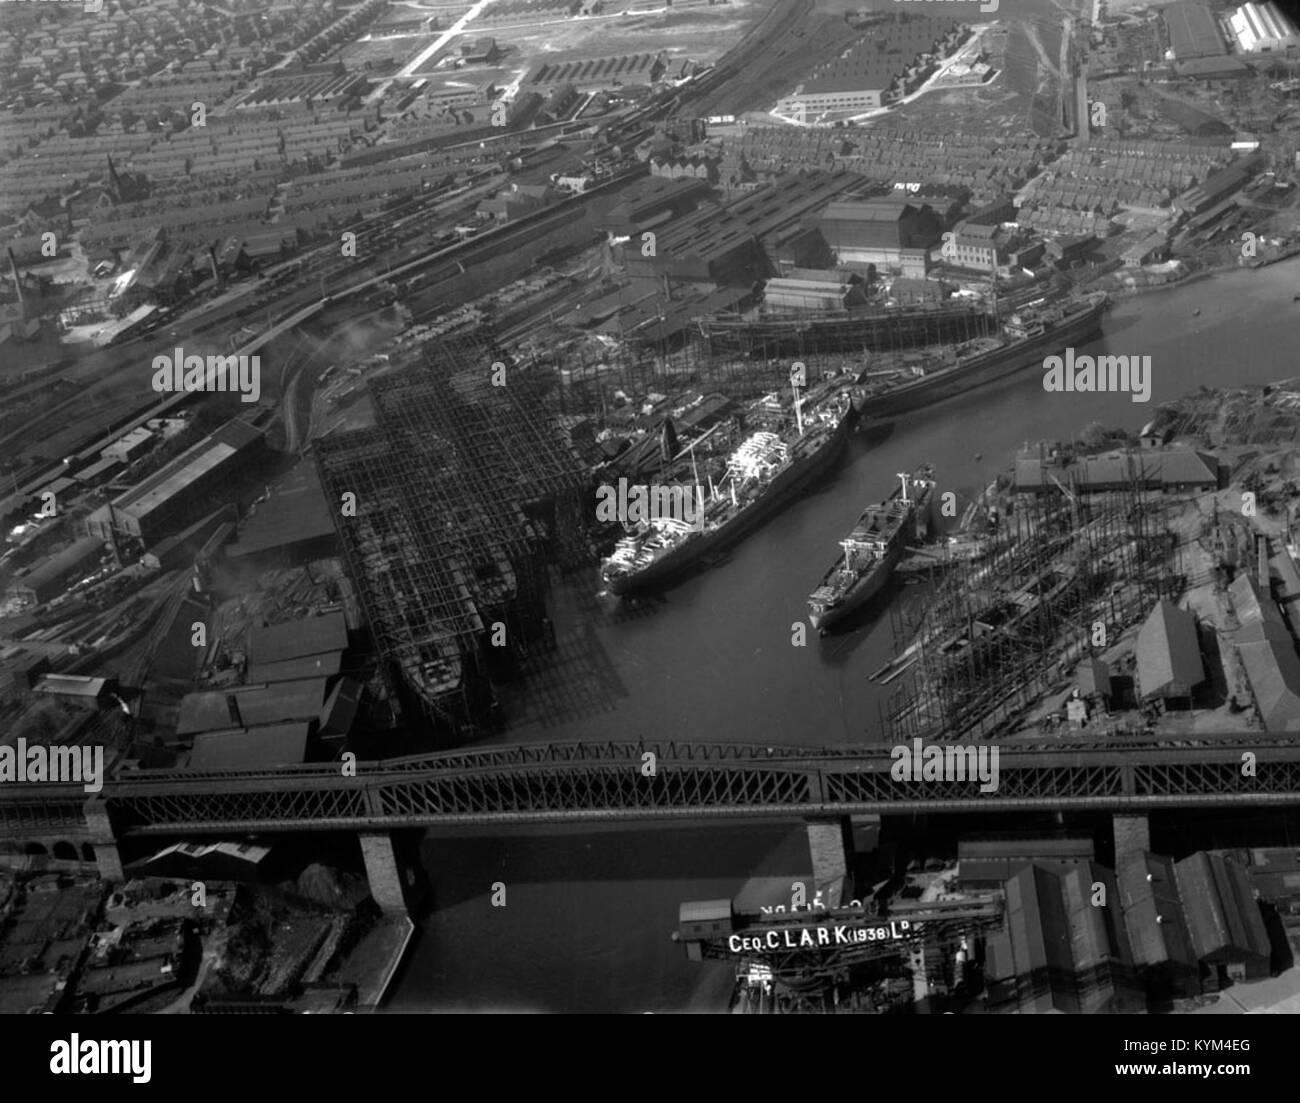 Werften auf den Fluss Wear, 1949 36005308656 o Stockfoto